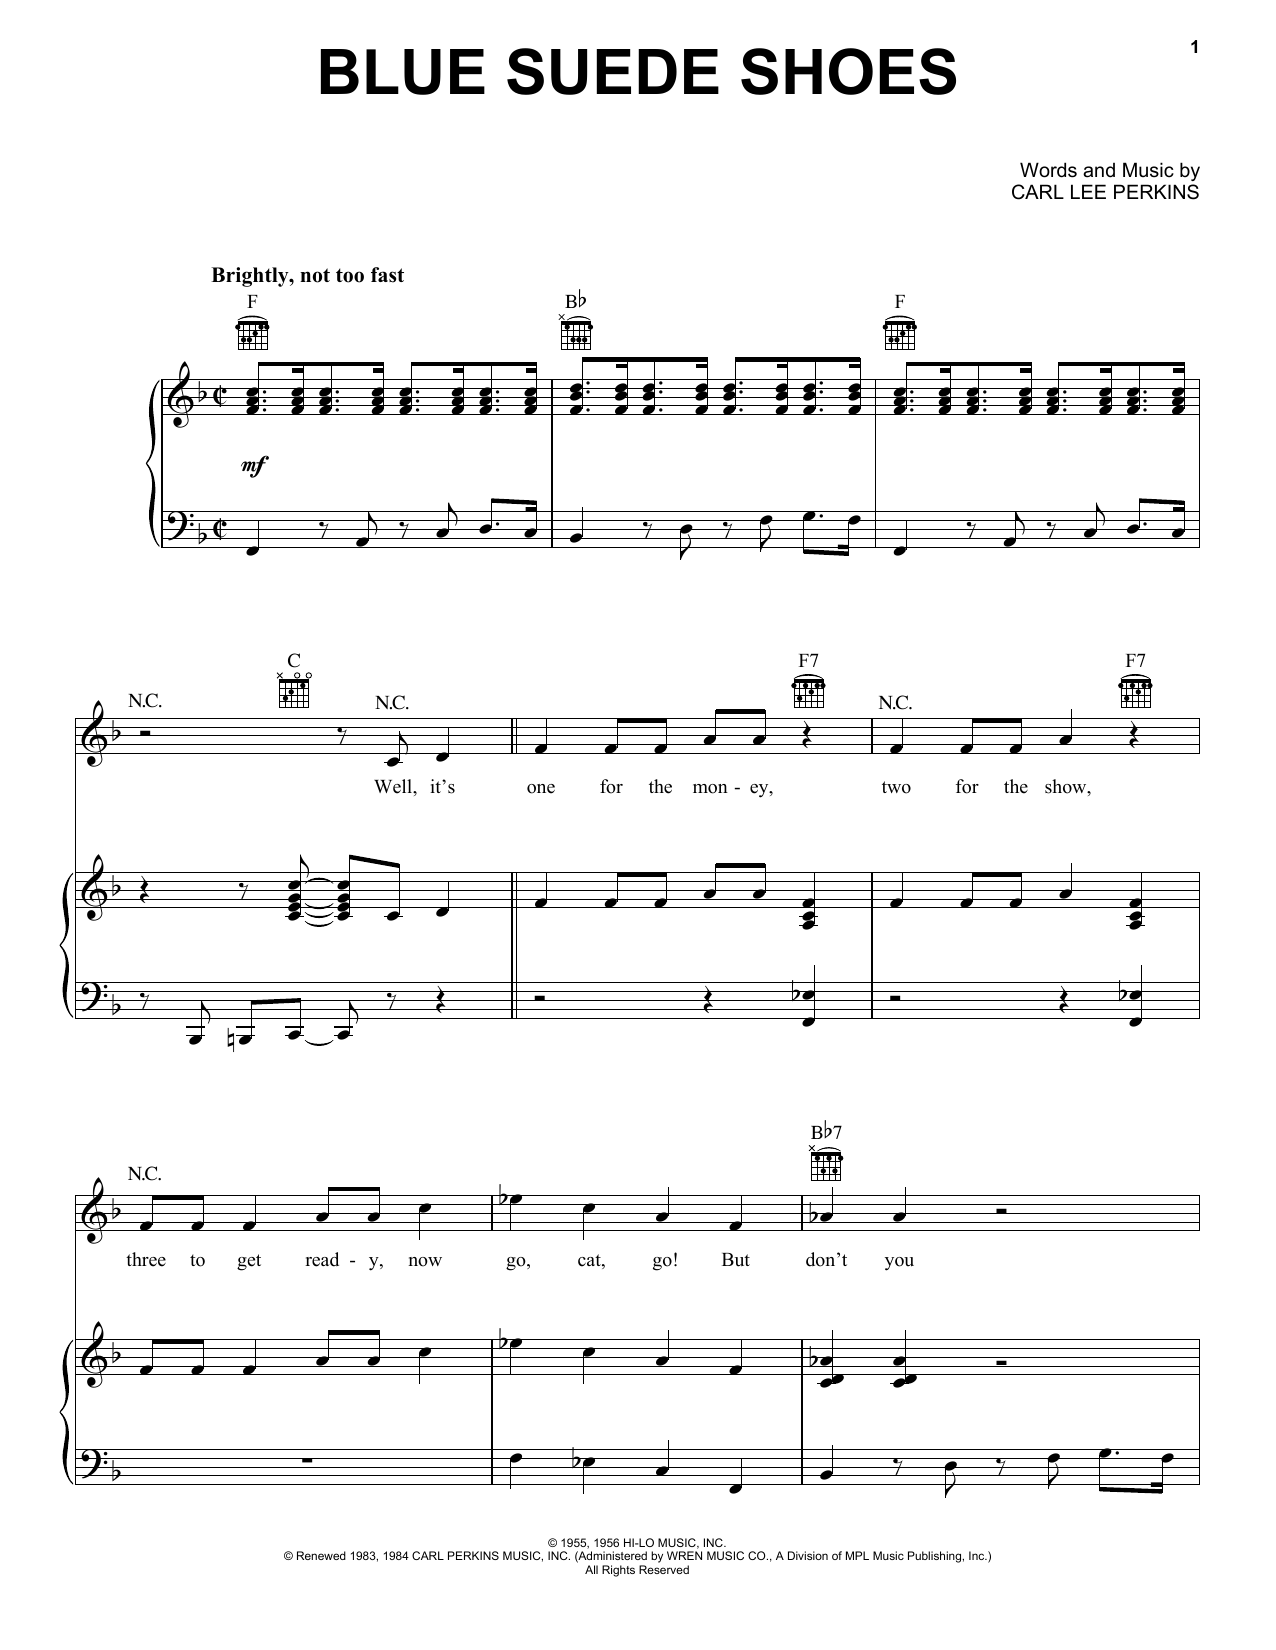 Elvis Presley Blue Suede Shoes Sheet Music Notes & Chords for Ukulele Lyrics & Chords - Download or Print PDF